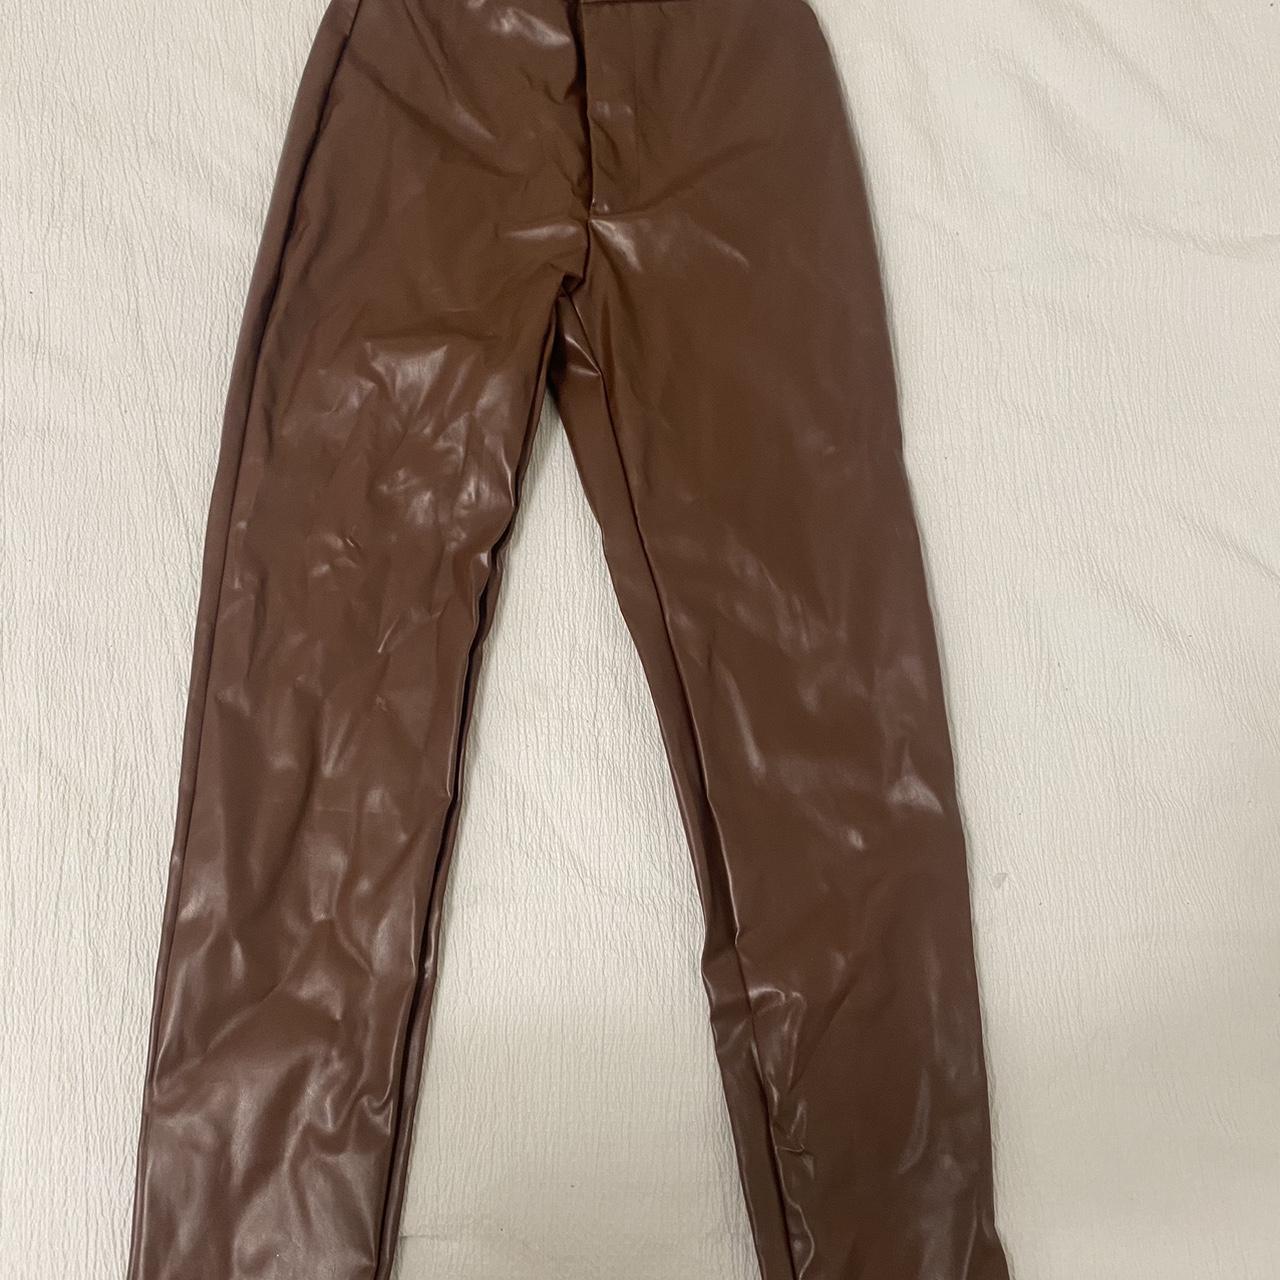 Brown leather pants - Depop